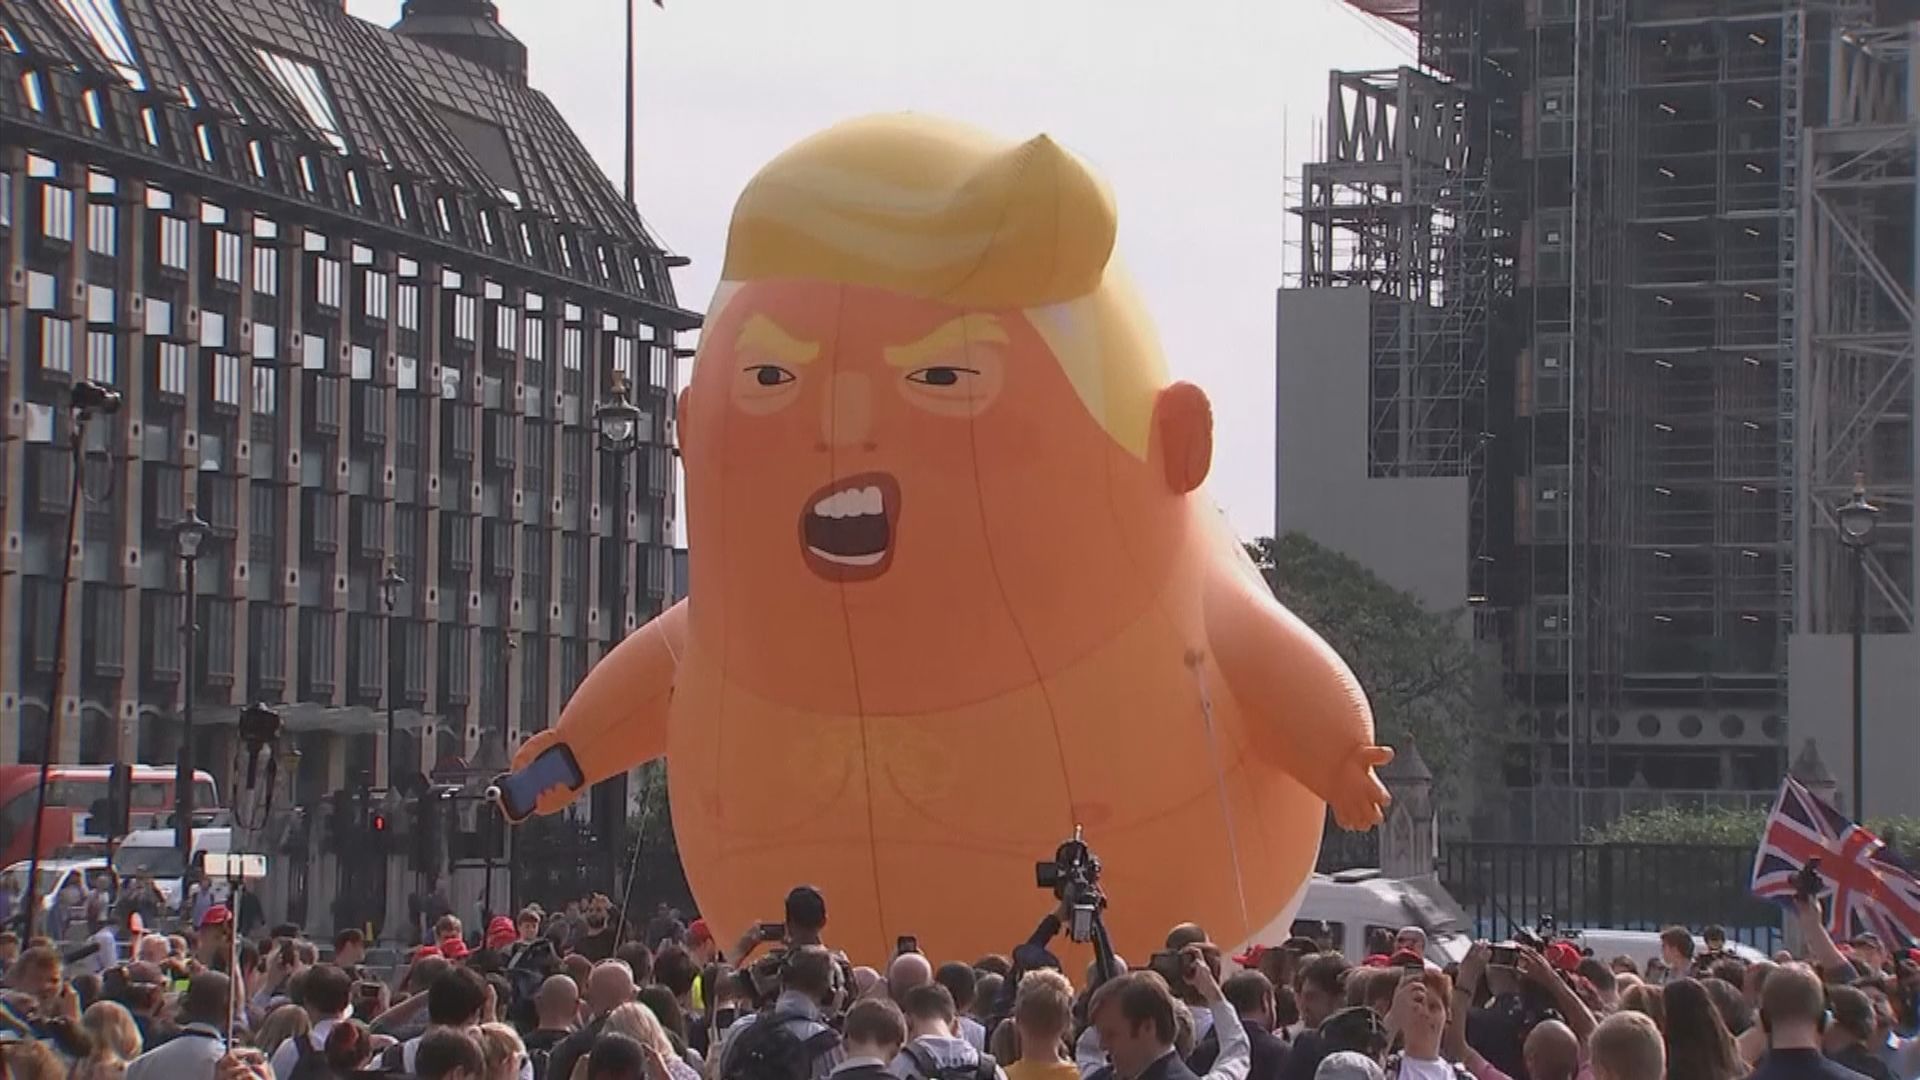 示威象徵「特朗普寶寶」氣球成倫敦博物館展品